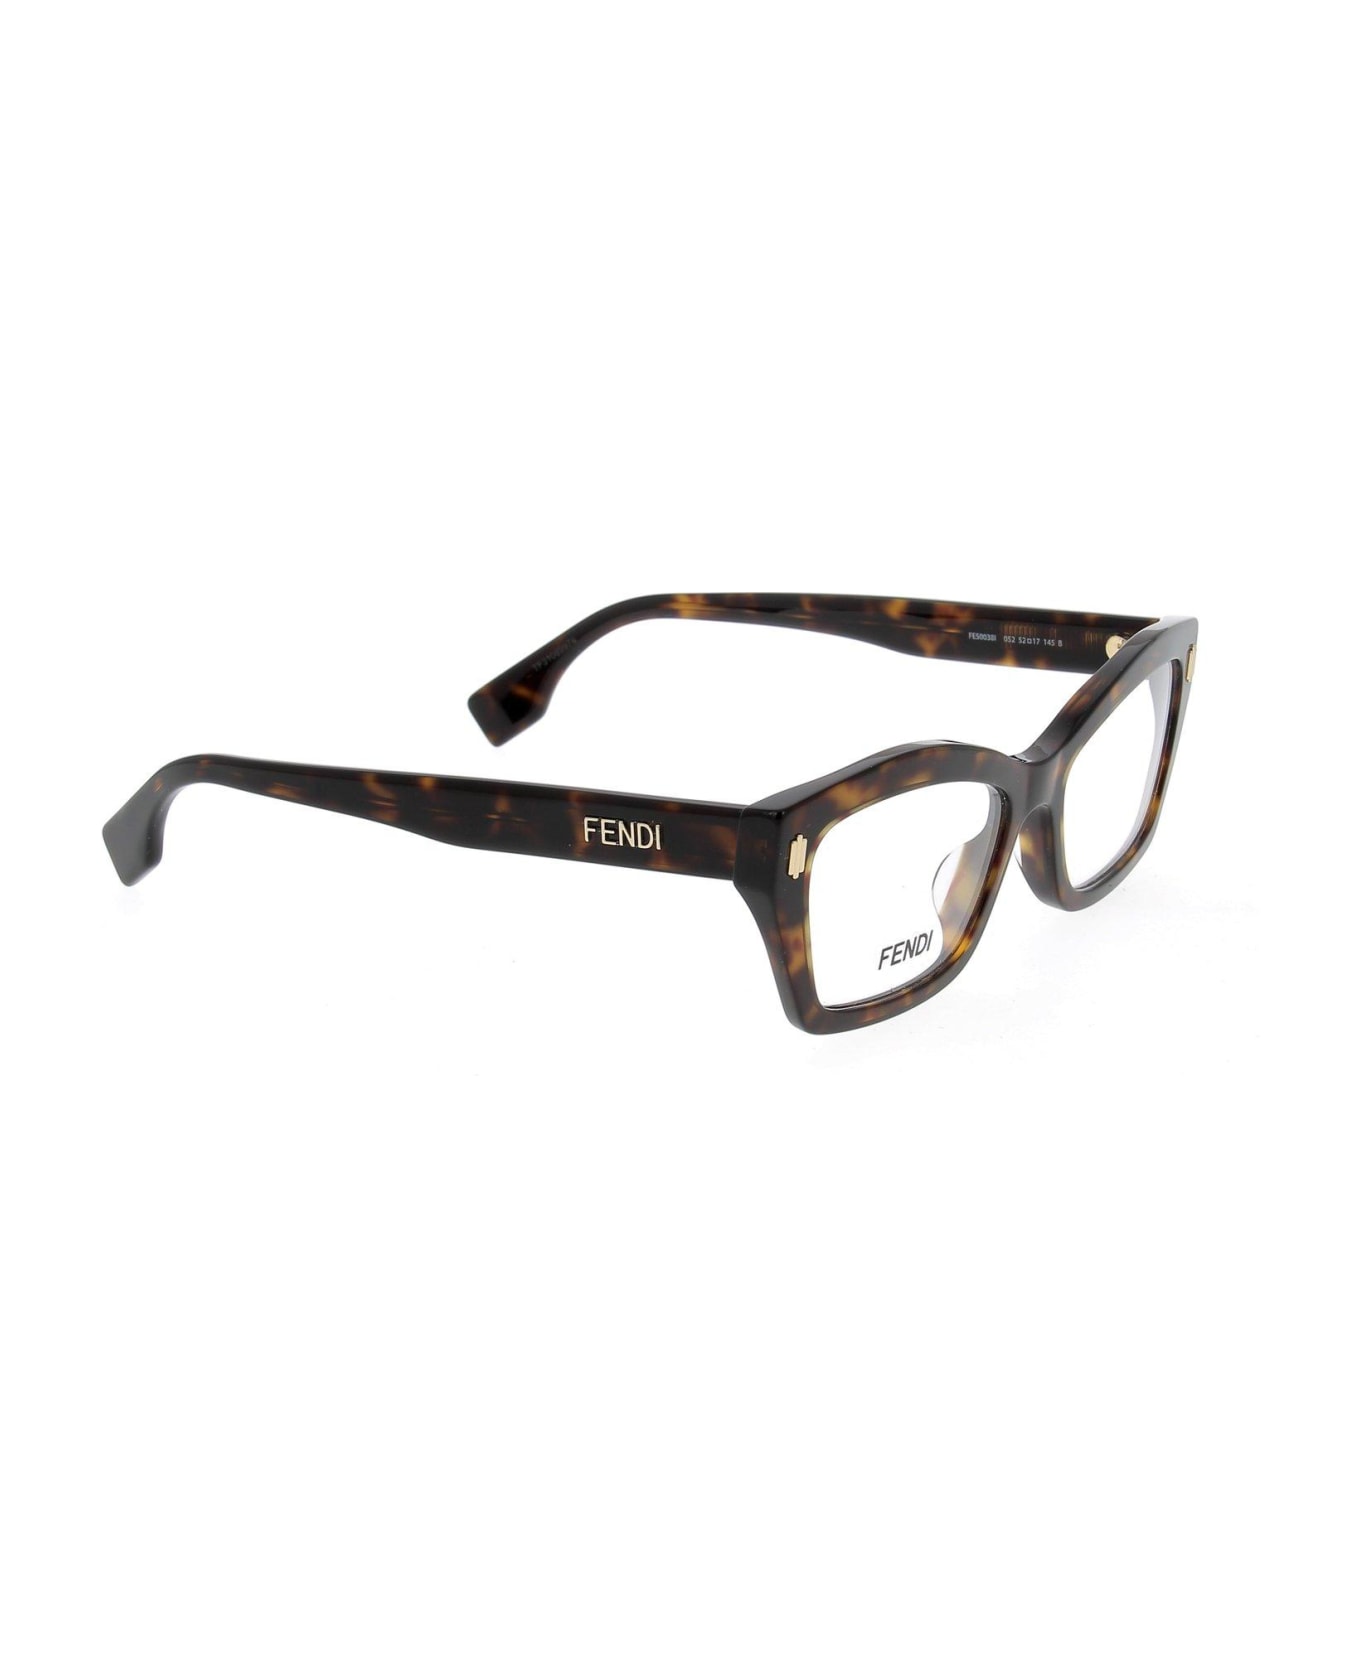 Fendi Eyewear Square Frame Glasses - 052 アイウェア